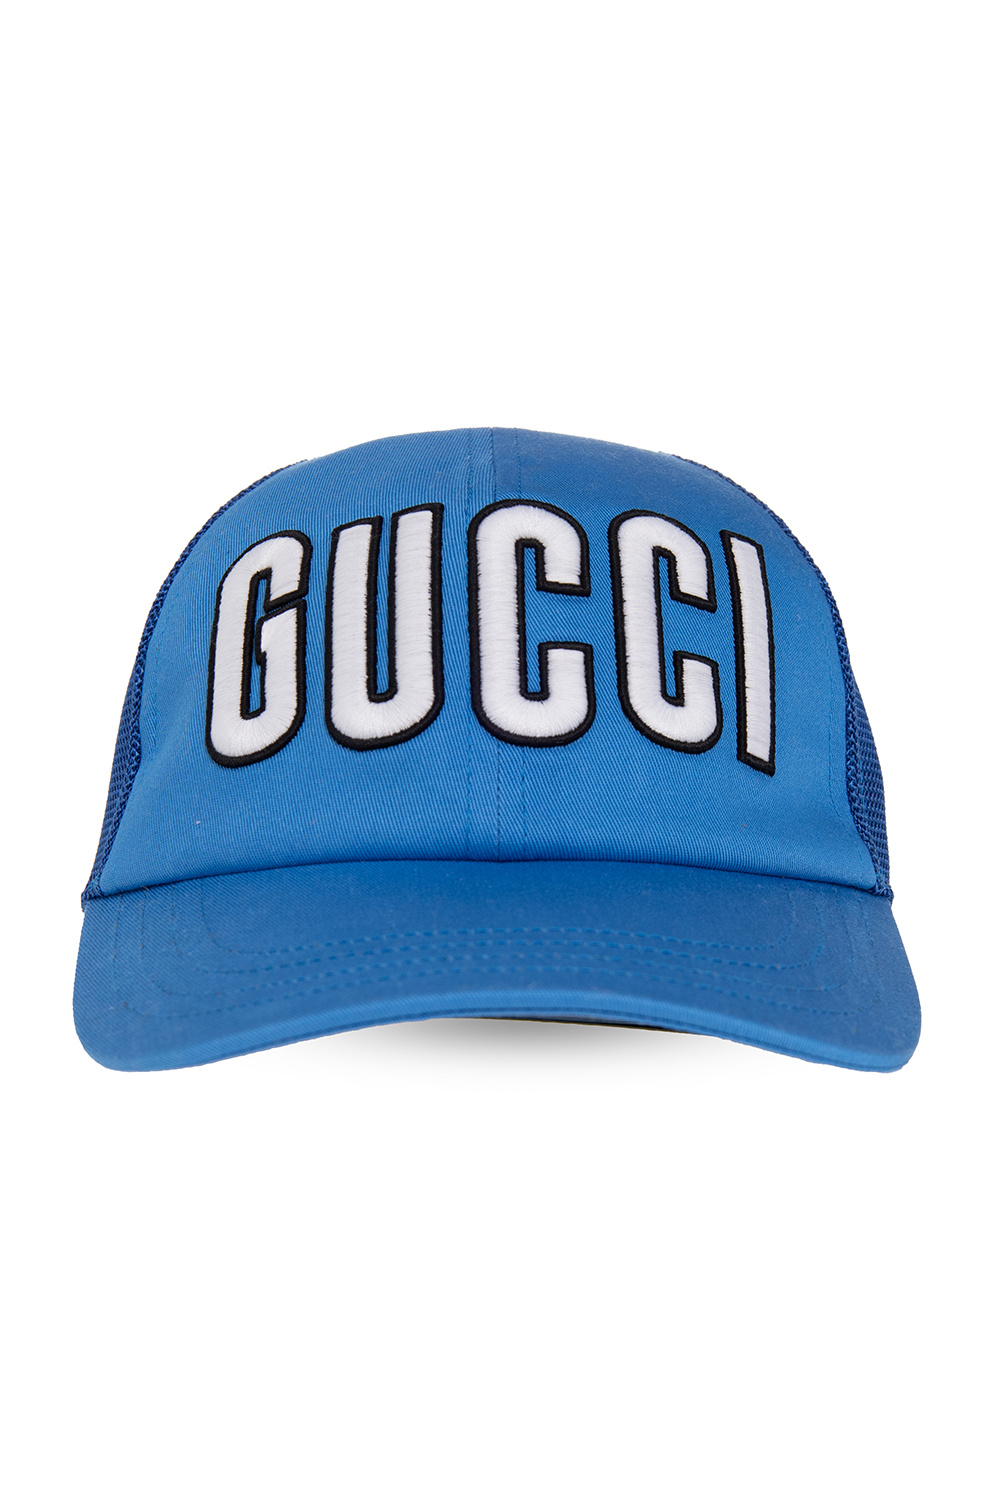 Gucci Logo Baseball Cap in White  Baseball caps fashion, Gucci, Baseball  cap